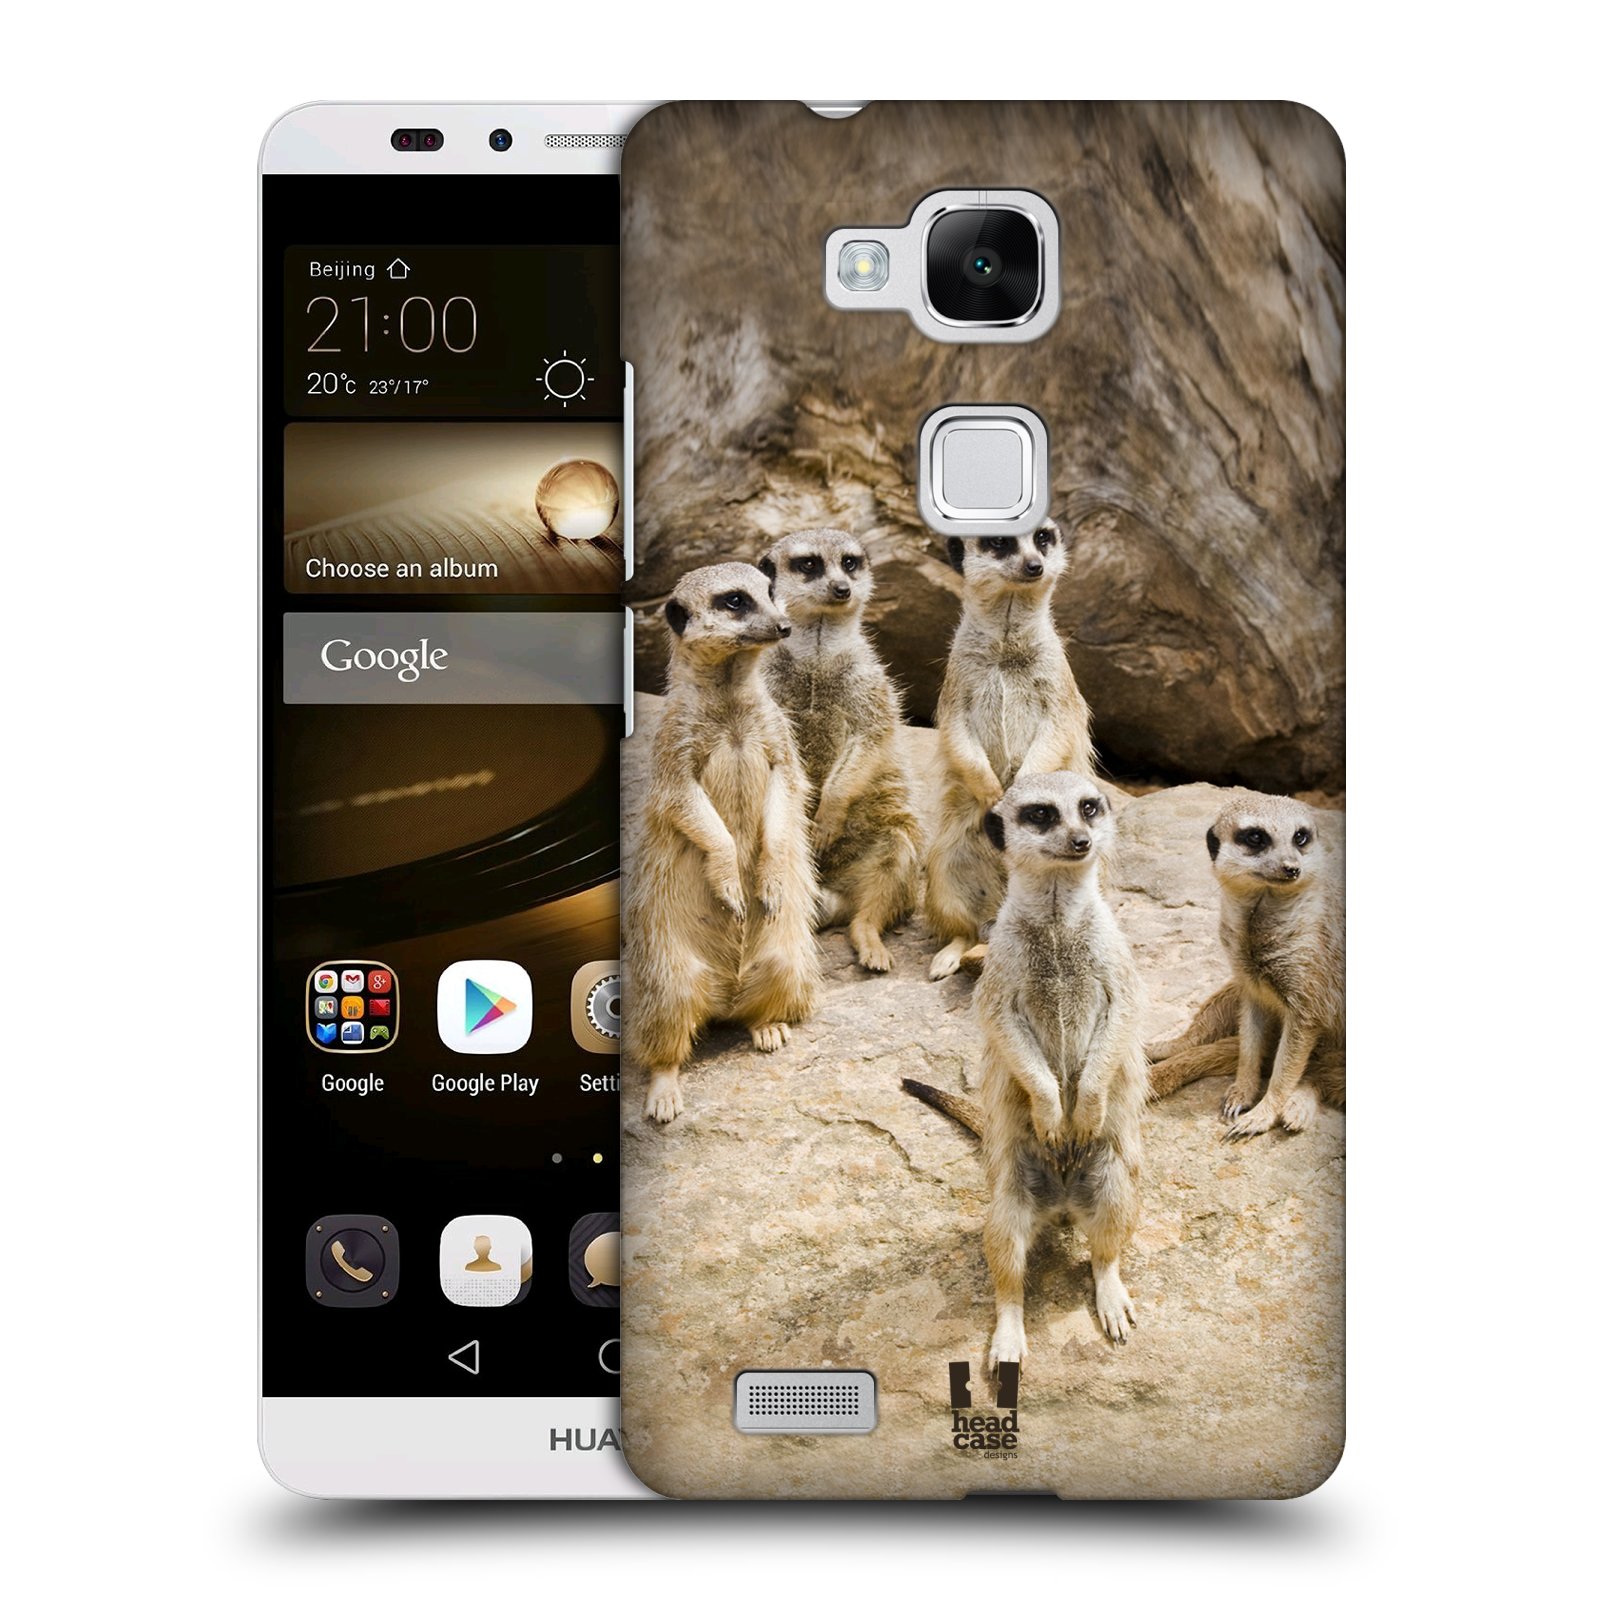 HEAD CASE plastový obal na mobil Huawei Mate 7 vzor Divočina, Divoký život a zvířata foto SURIKATA